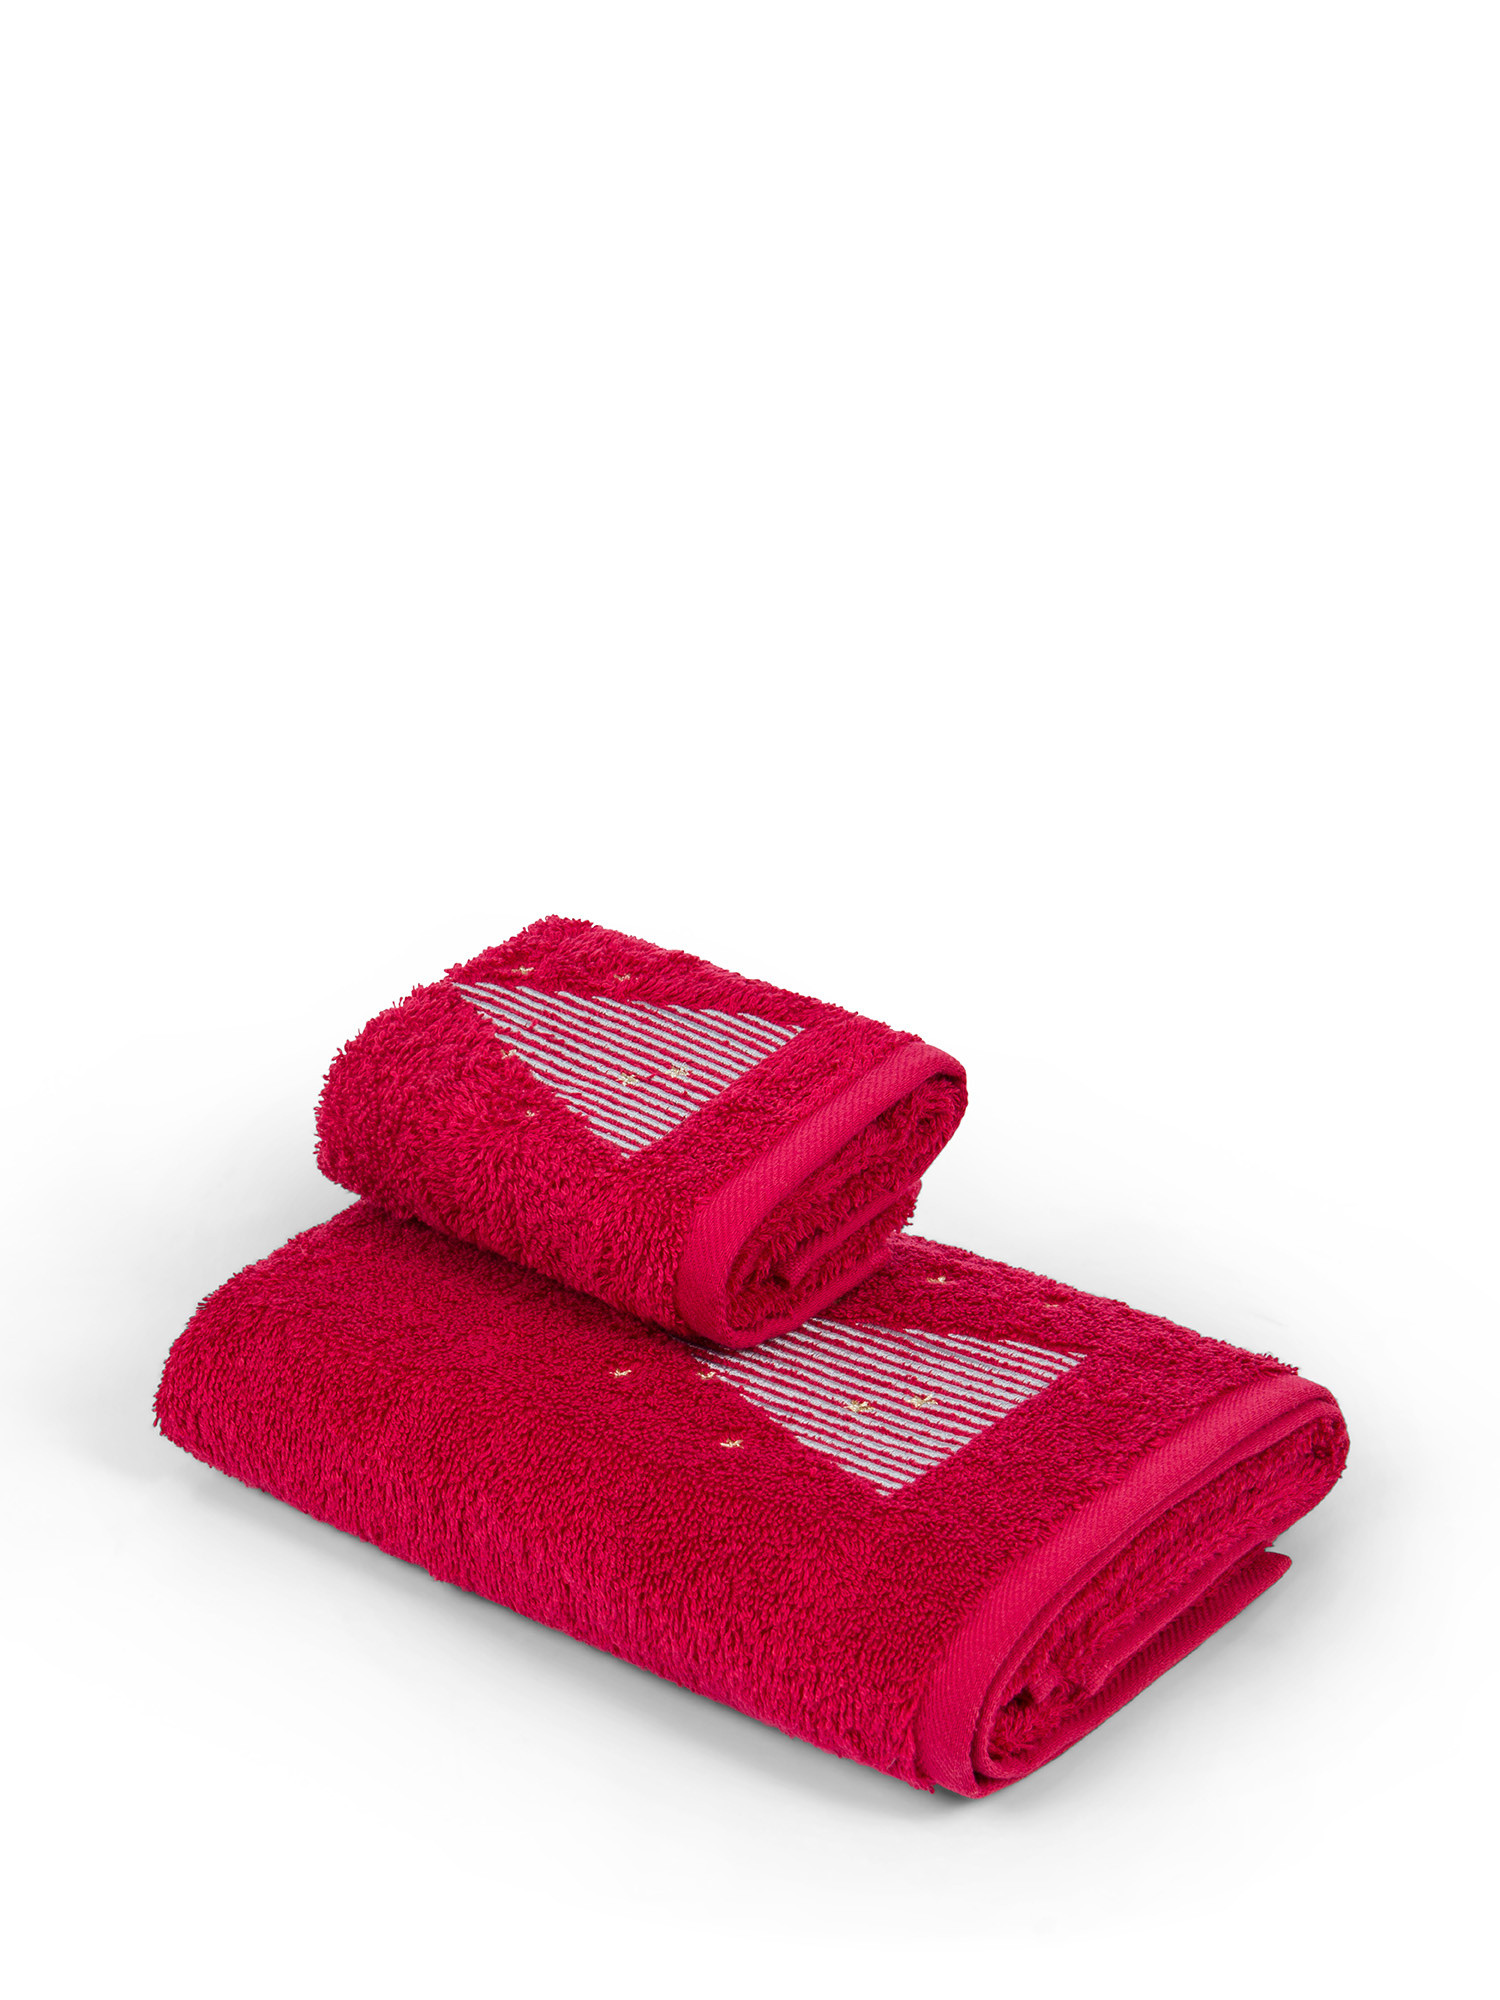 Комплект из 2-х хлопковых полотенец с вышивкой «Ёлка»., красный